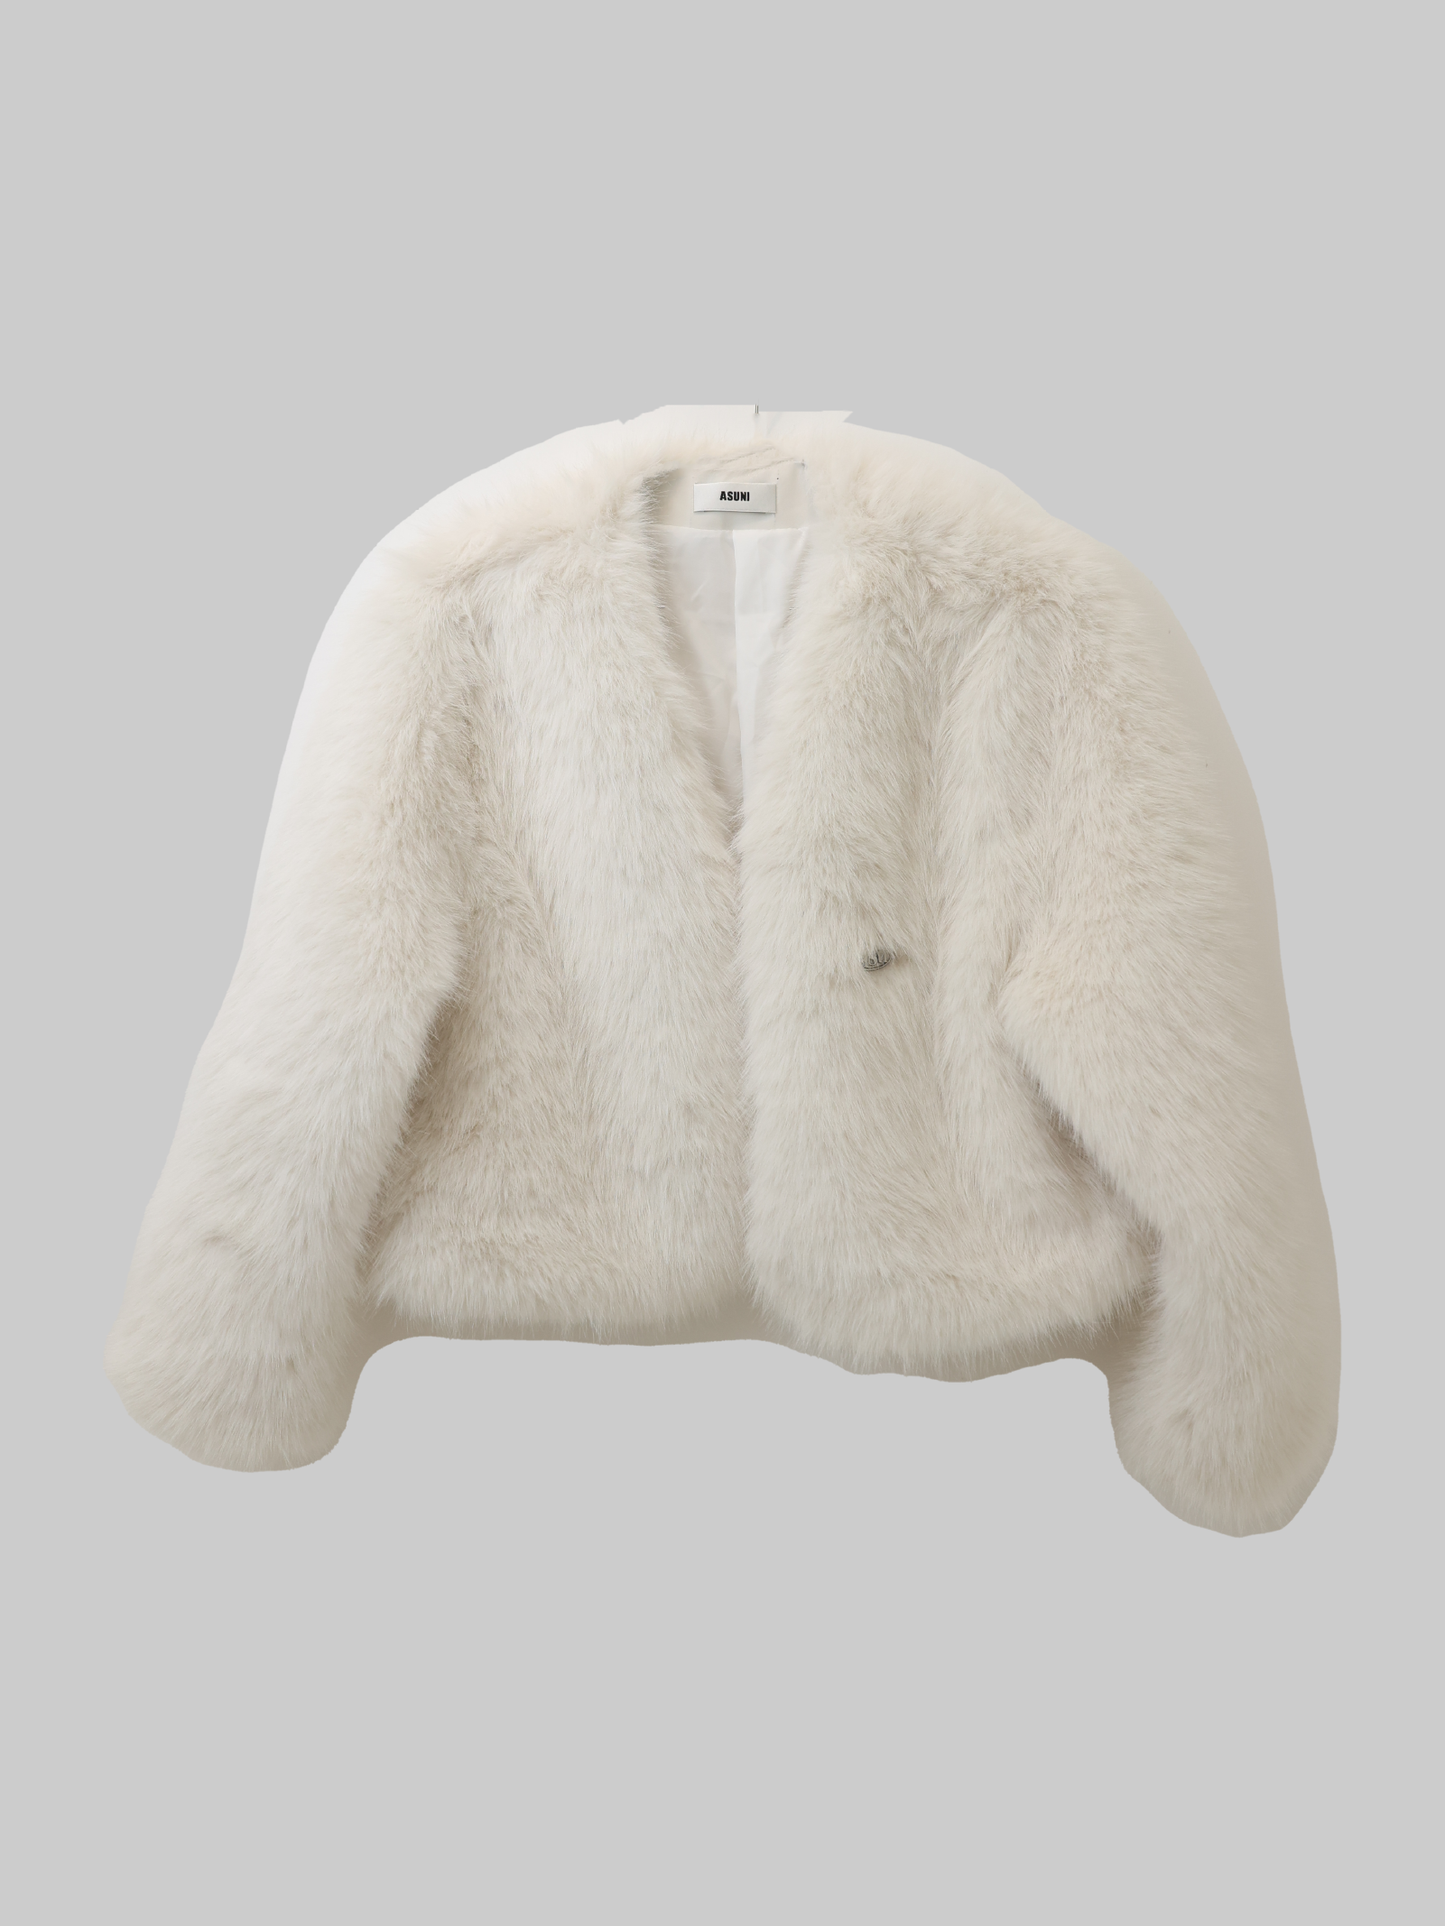 asuni Faux Fur Collar Evening Cape for Winter Coat in White